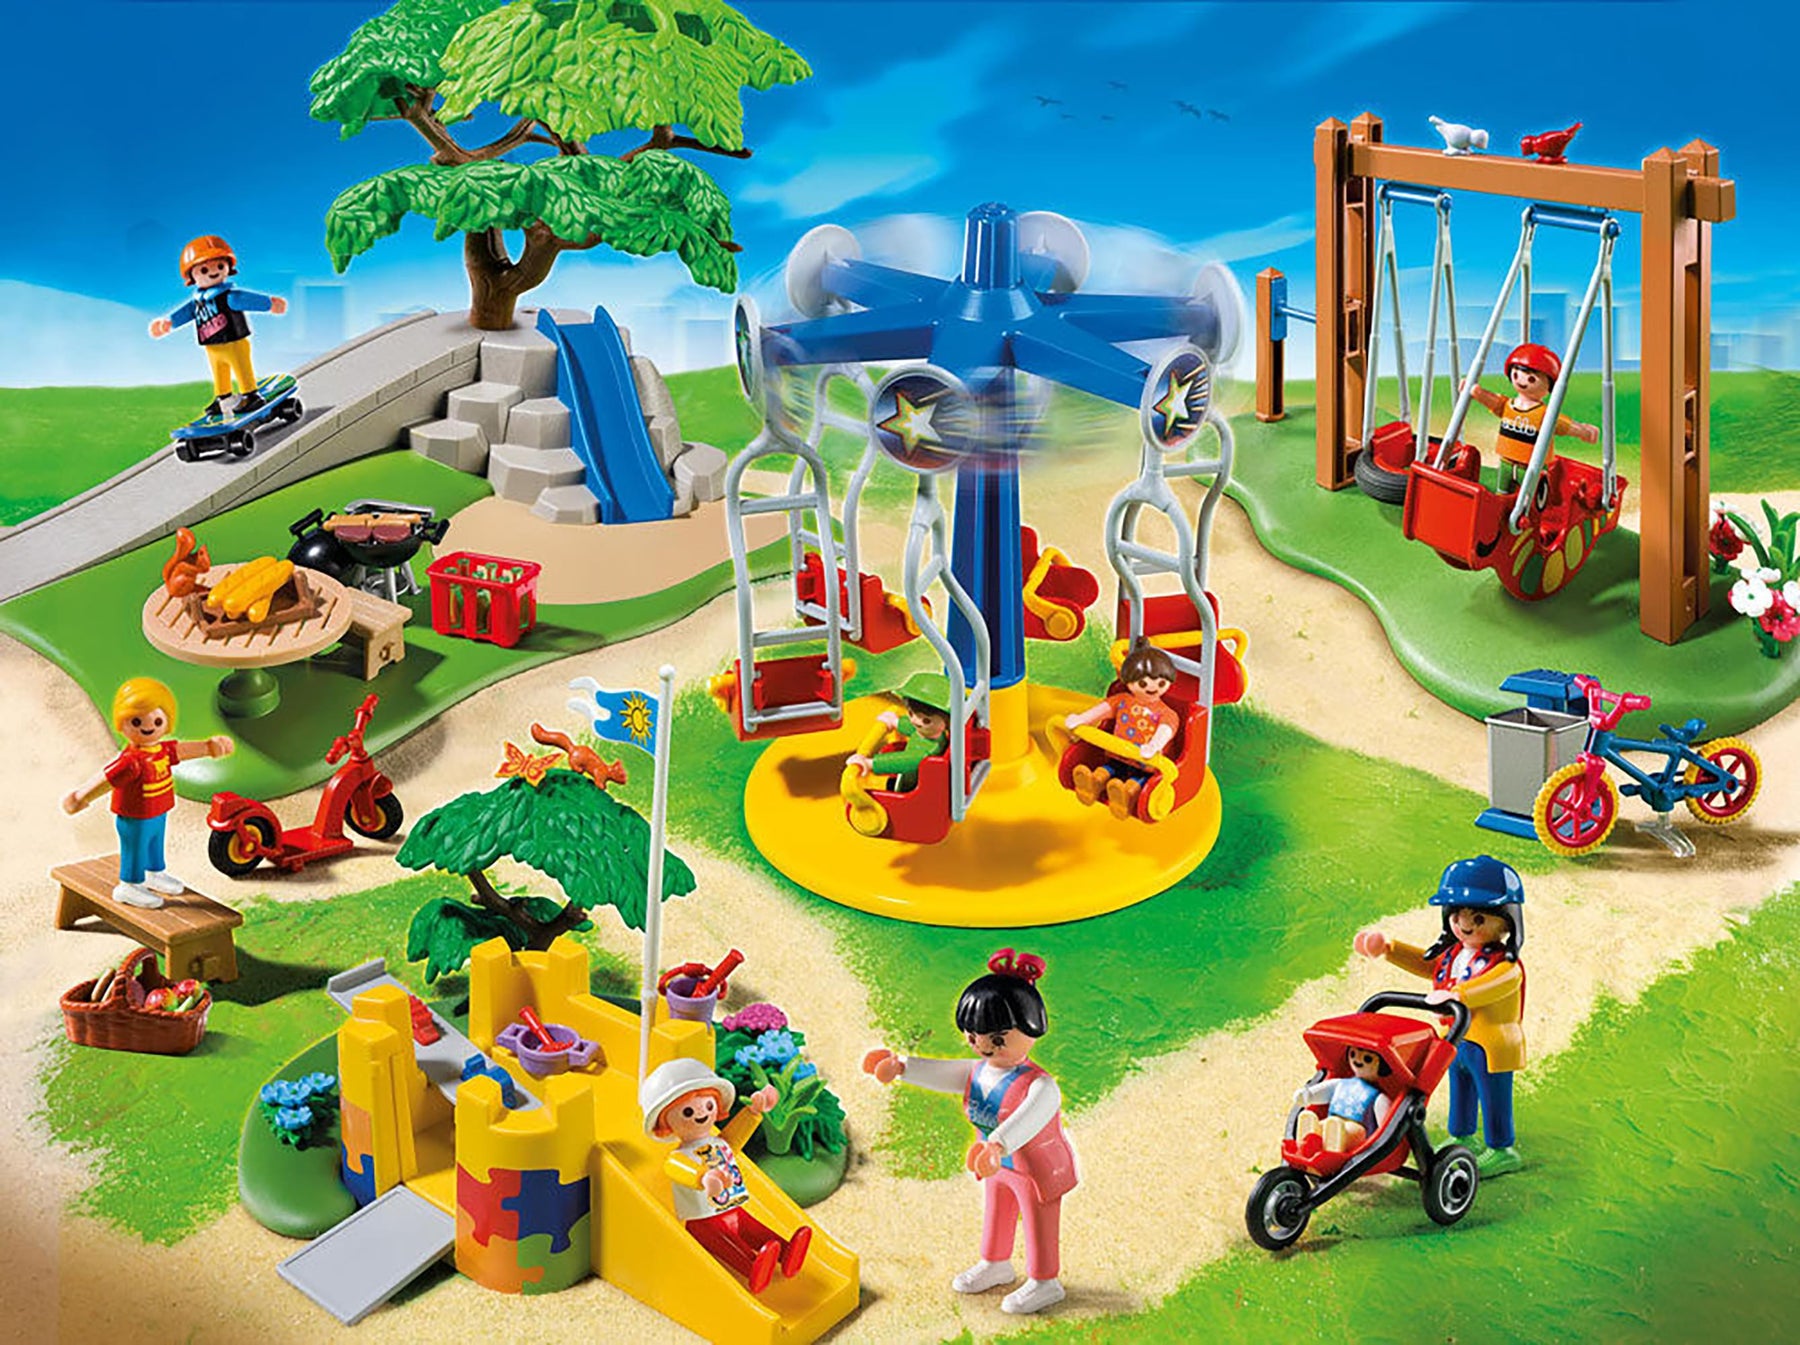 Playmobil City Life 5024 Playground 159 Piece Building Set